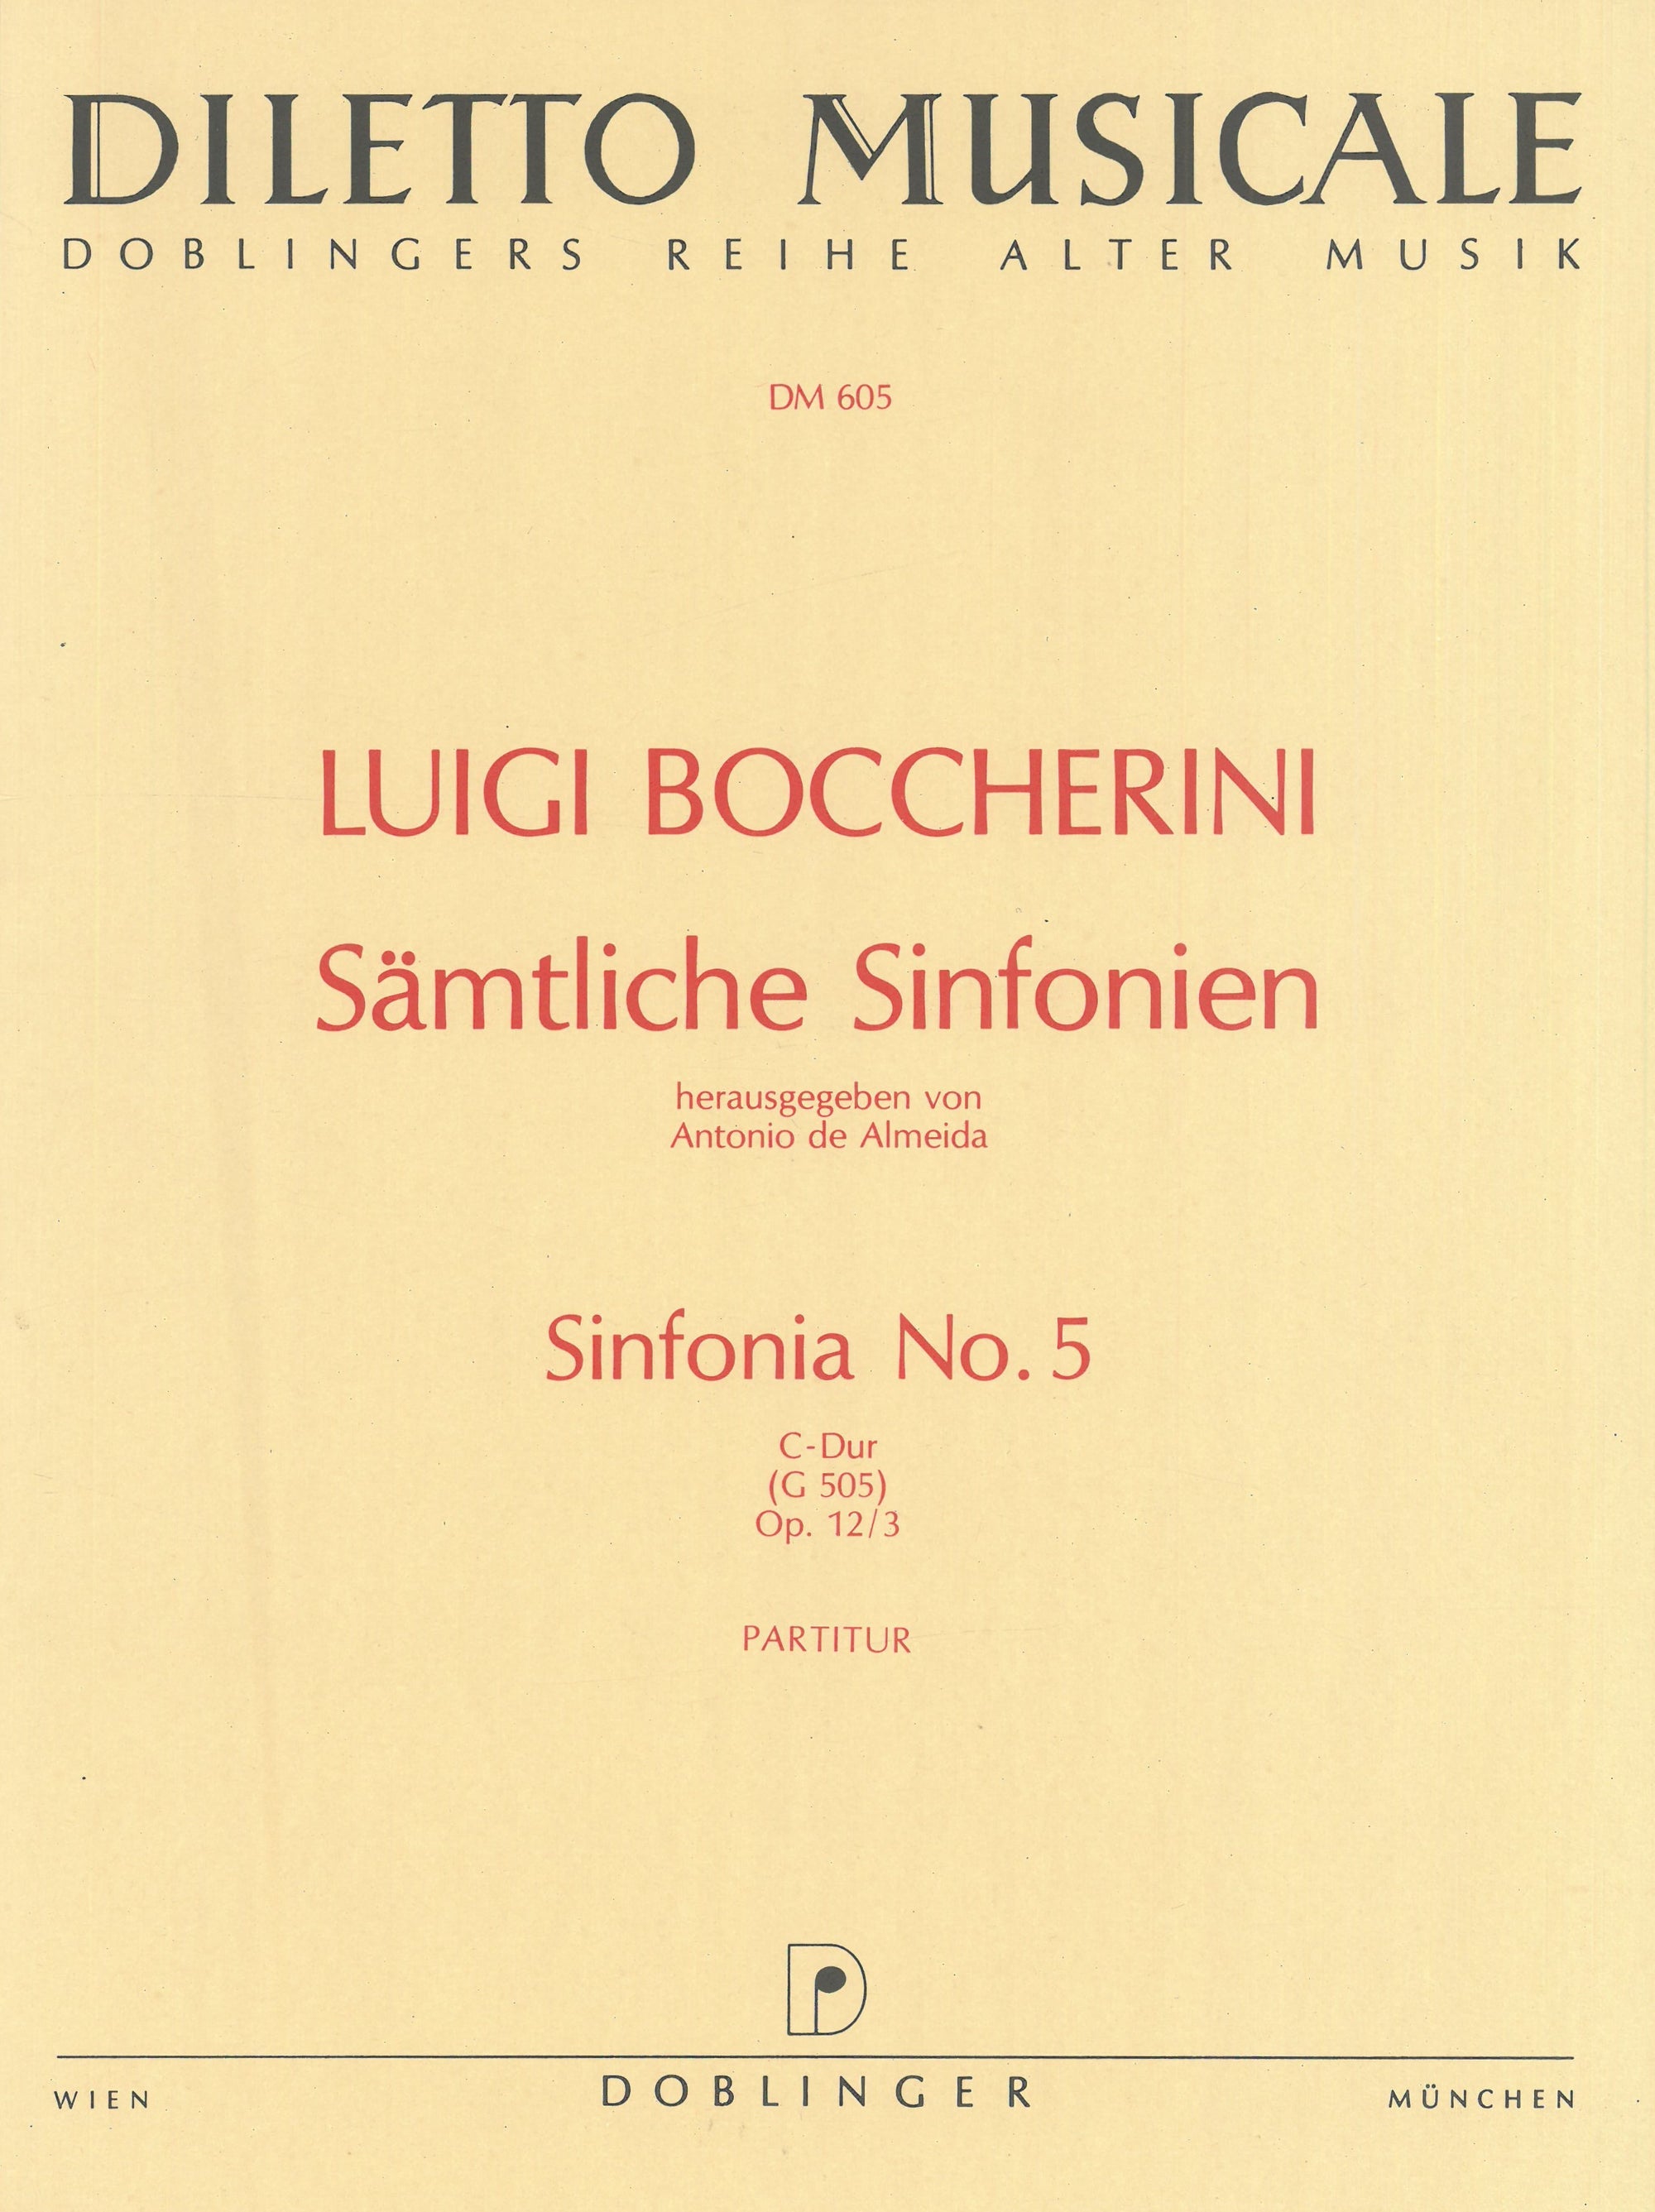 Boccherini: Sinfonia No. 5 in C Major, G 505, Op. 12, No. 3